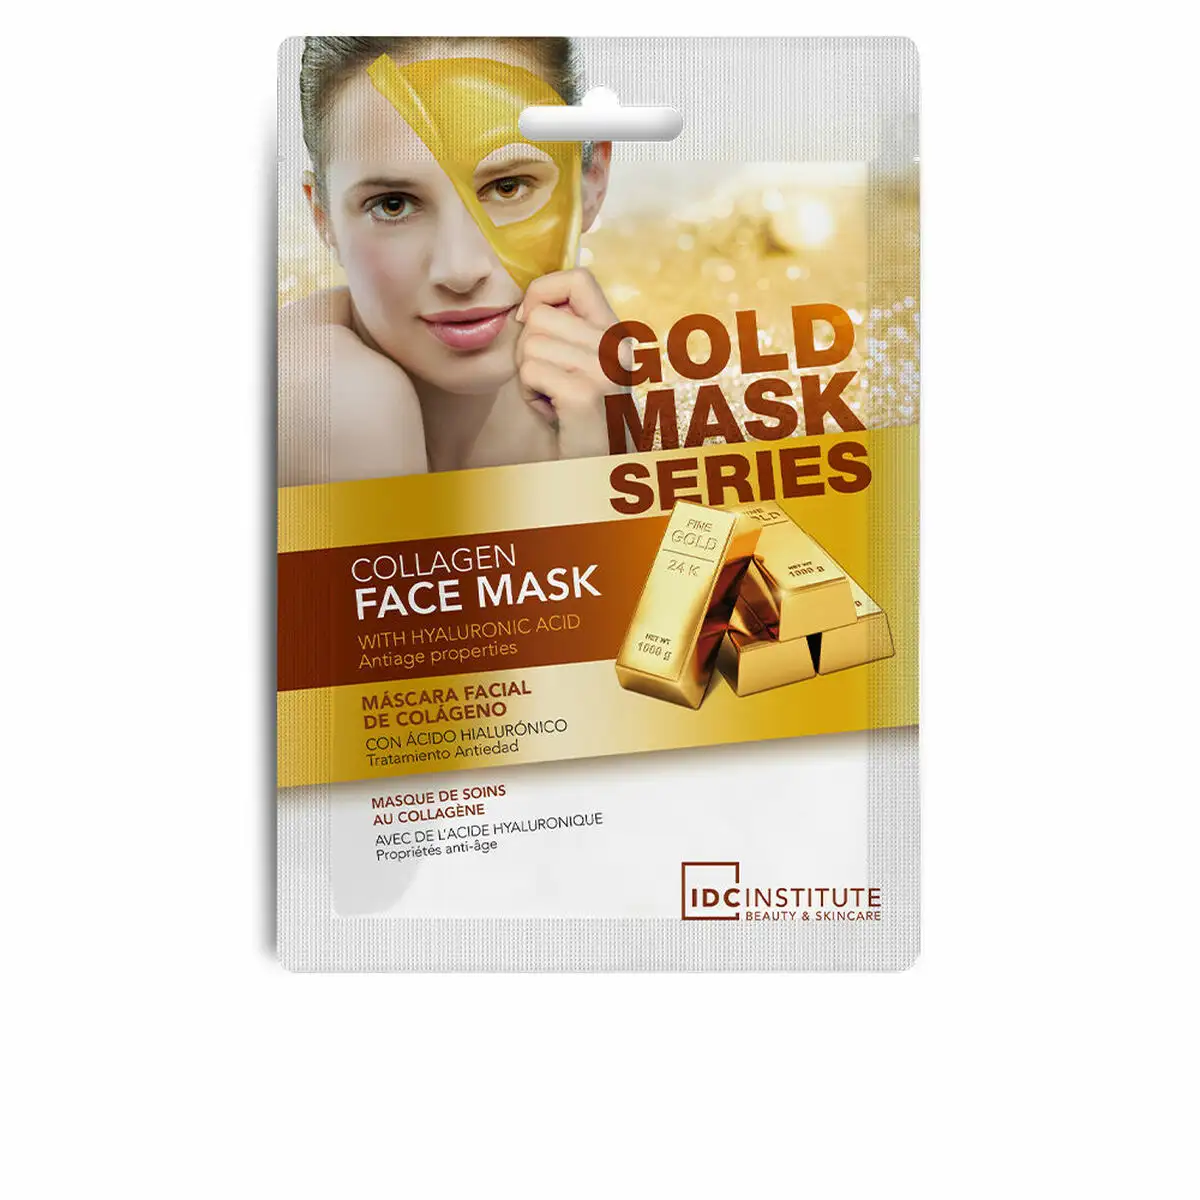 Masque facial idc institute gold mask series collagene 12 unites_3255. DIAYTAR SENEGAL - Là où Chaque Produit Est une Trouvaille. Explorez notre sélection minutieuse et découvrez des articles qui correspondent à votre style de vie et à vos aspirations.